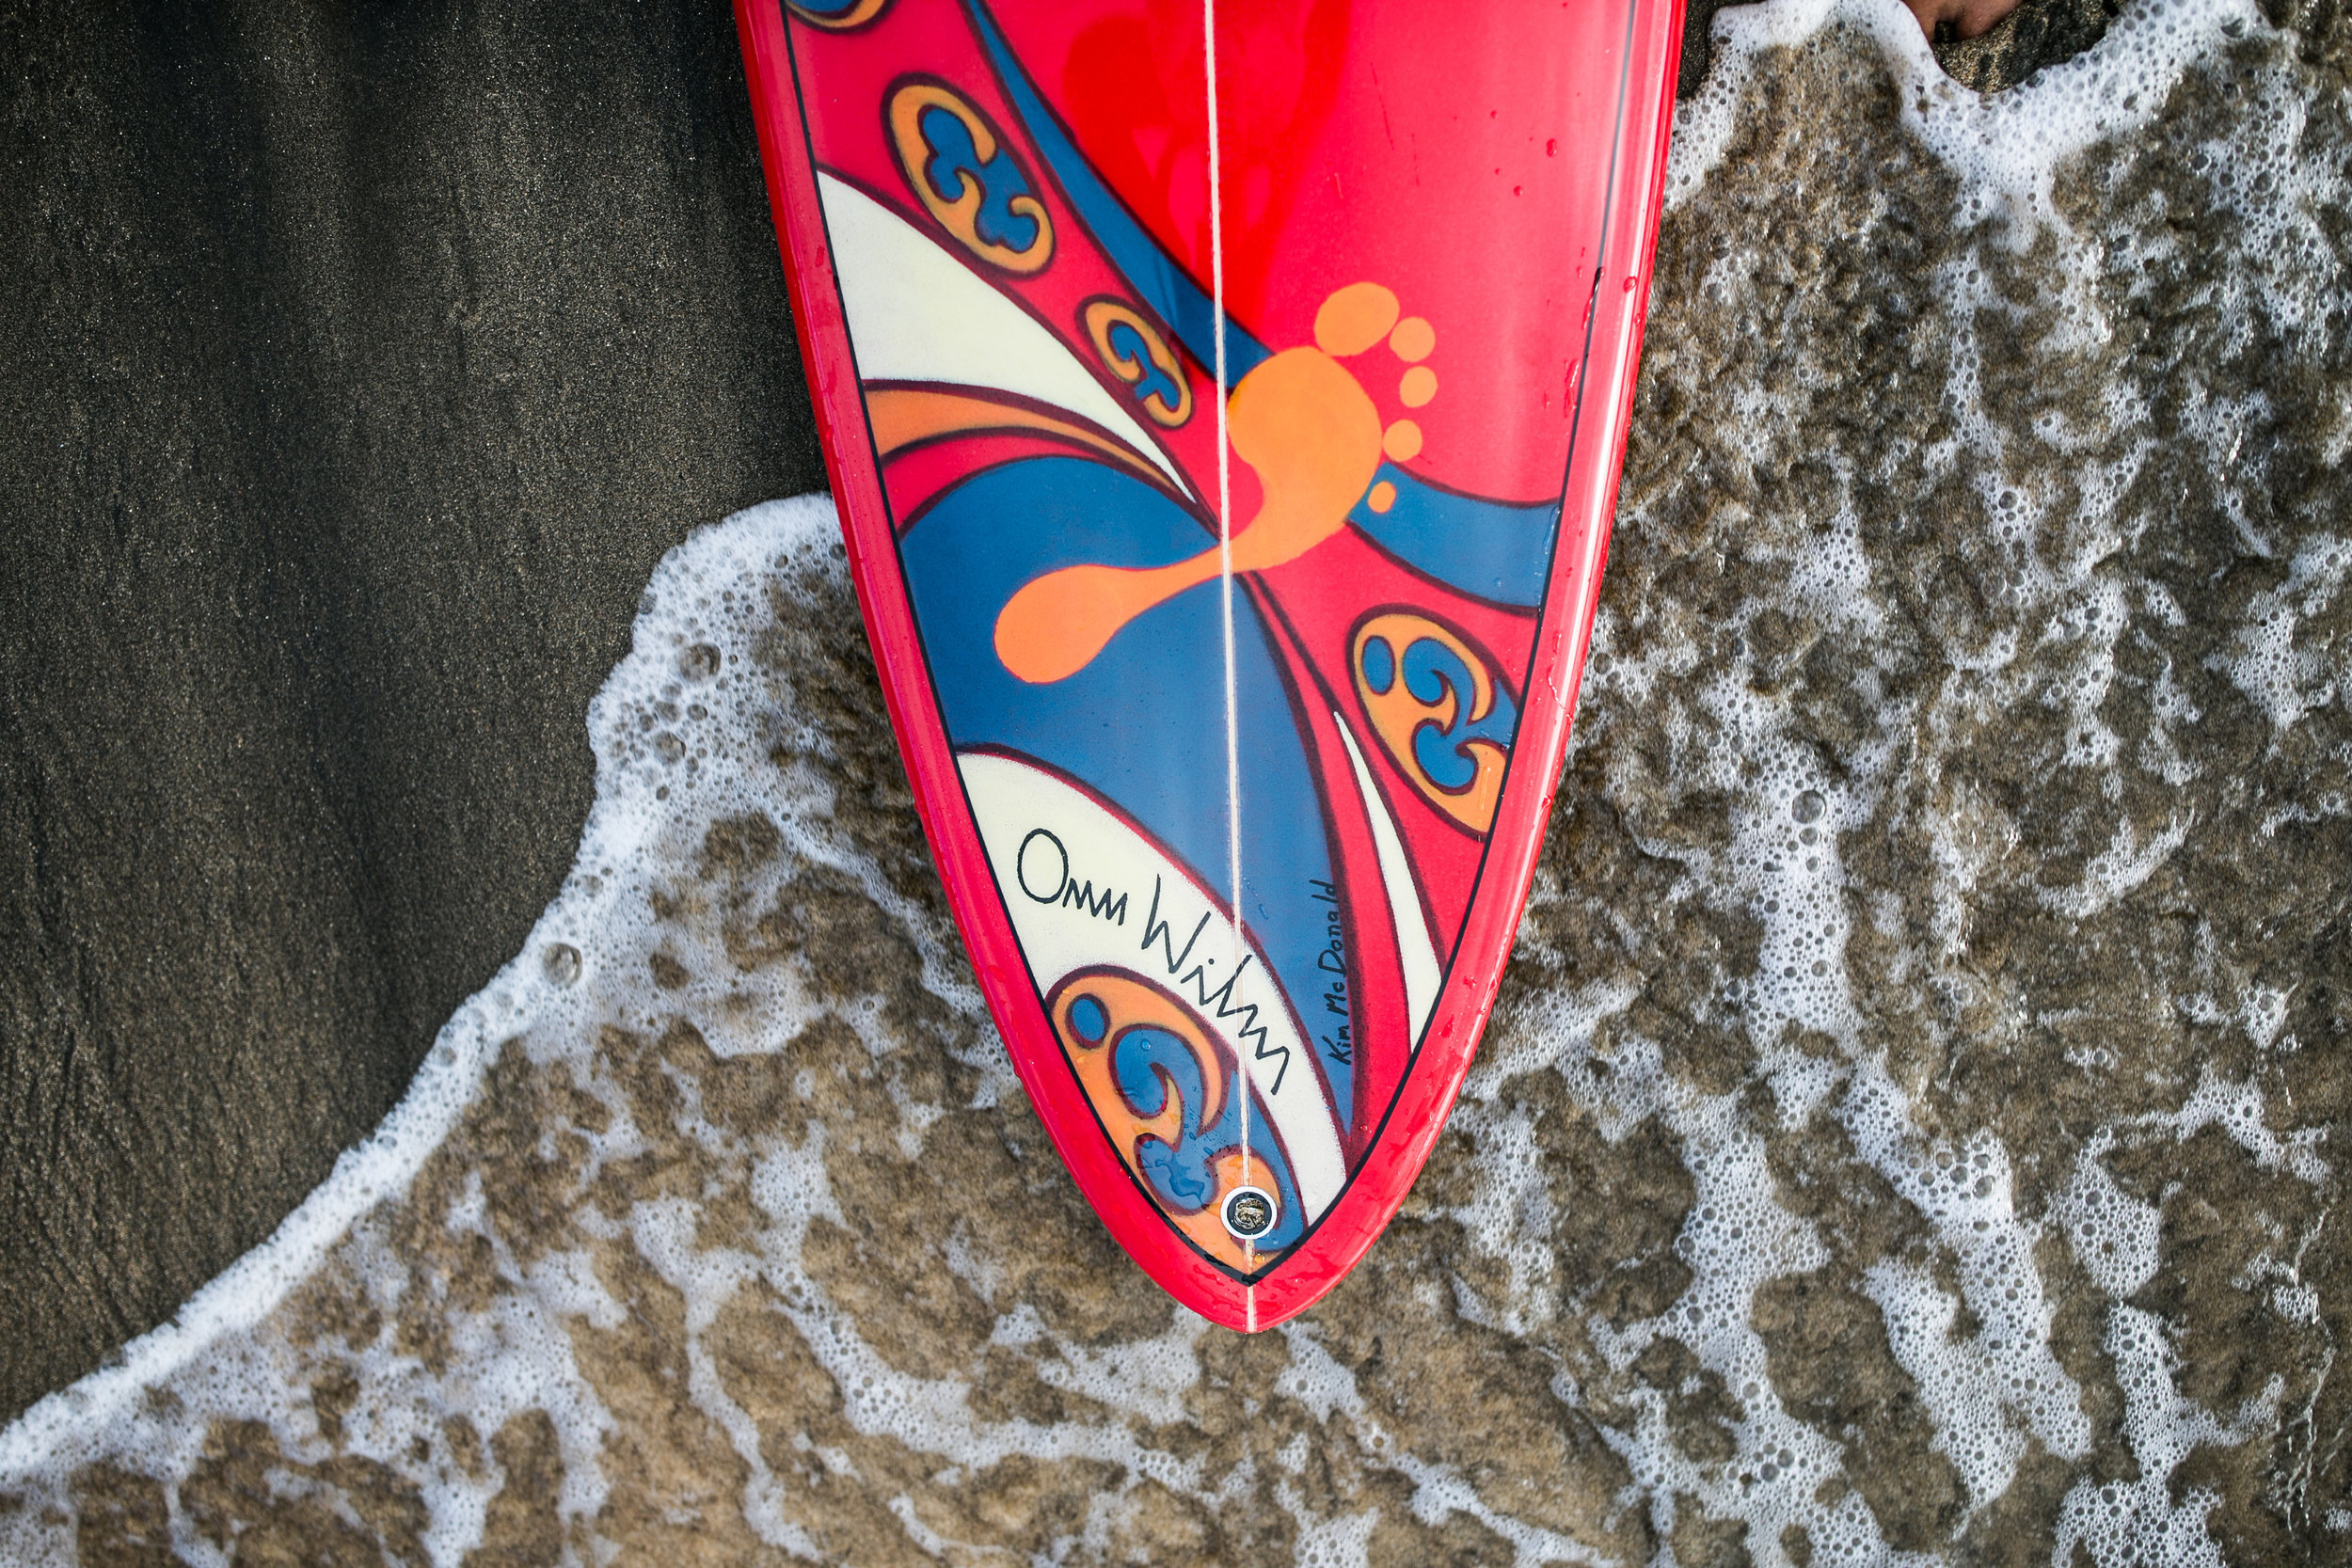  Kim McDonald surfboard art in the Hawaii ocean 